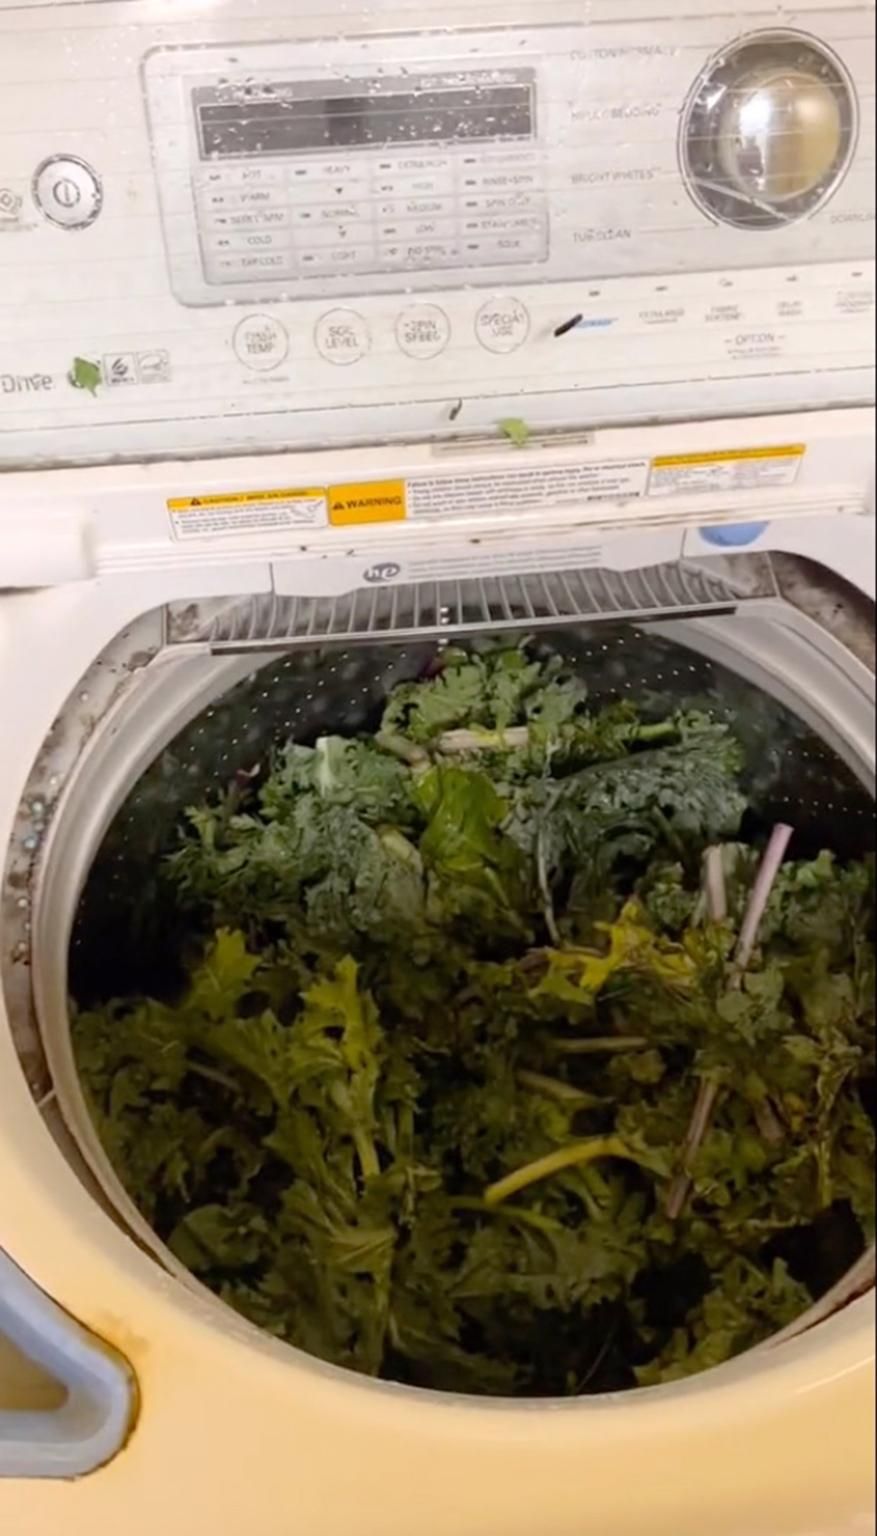 启动洗衣机之前，洗衣机装满了蔬菜。网图